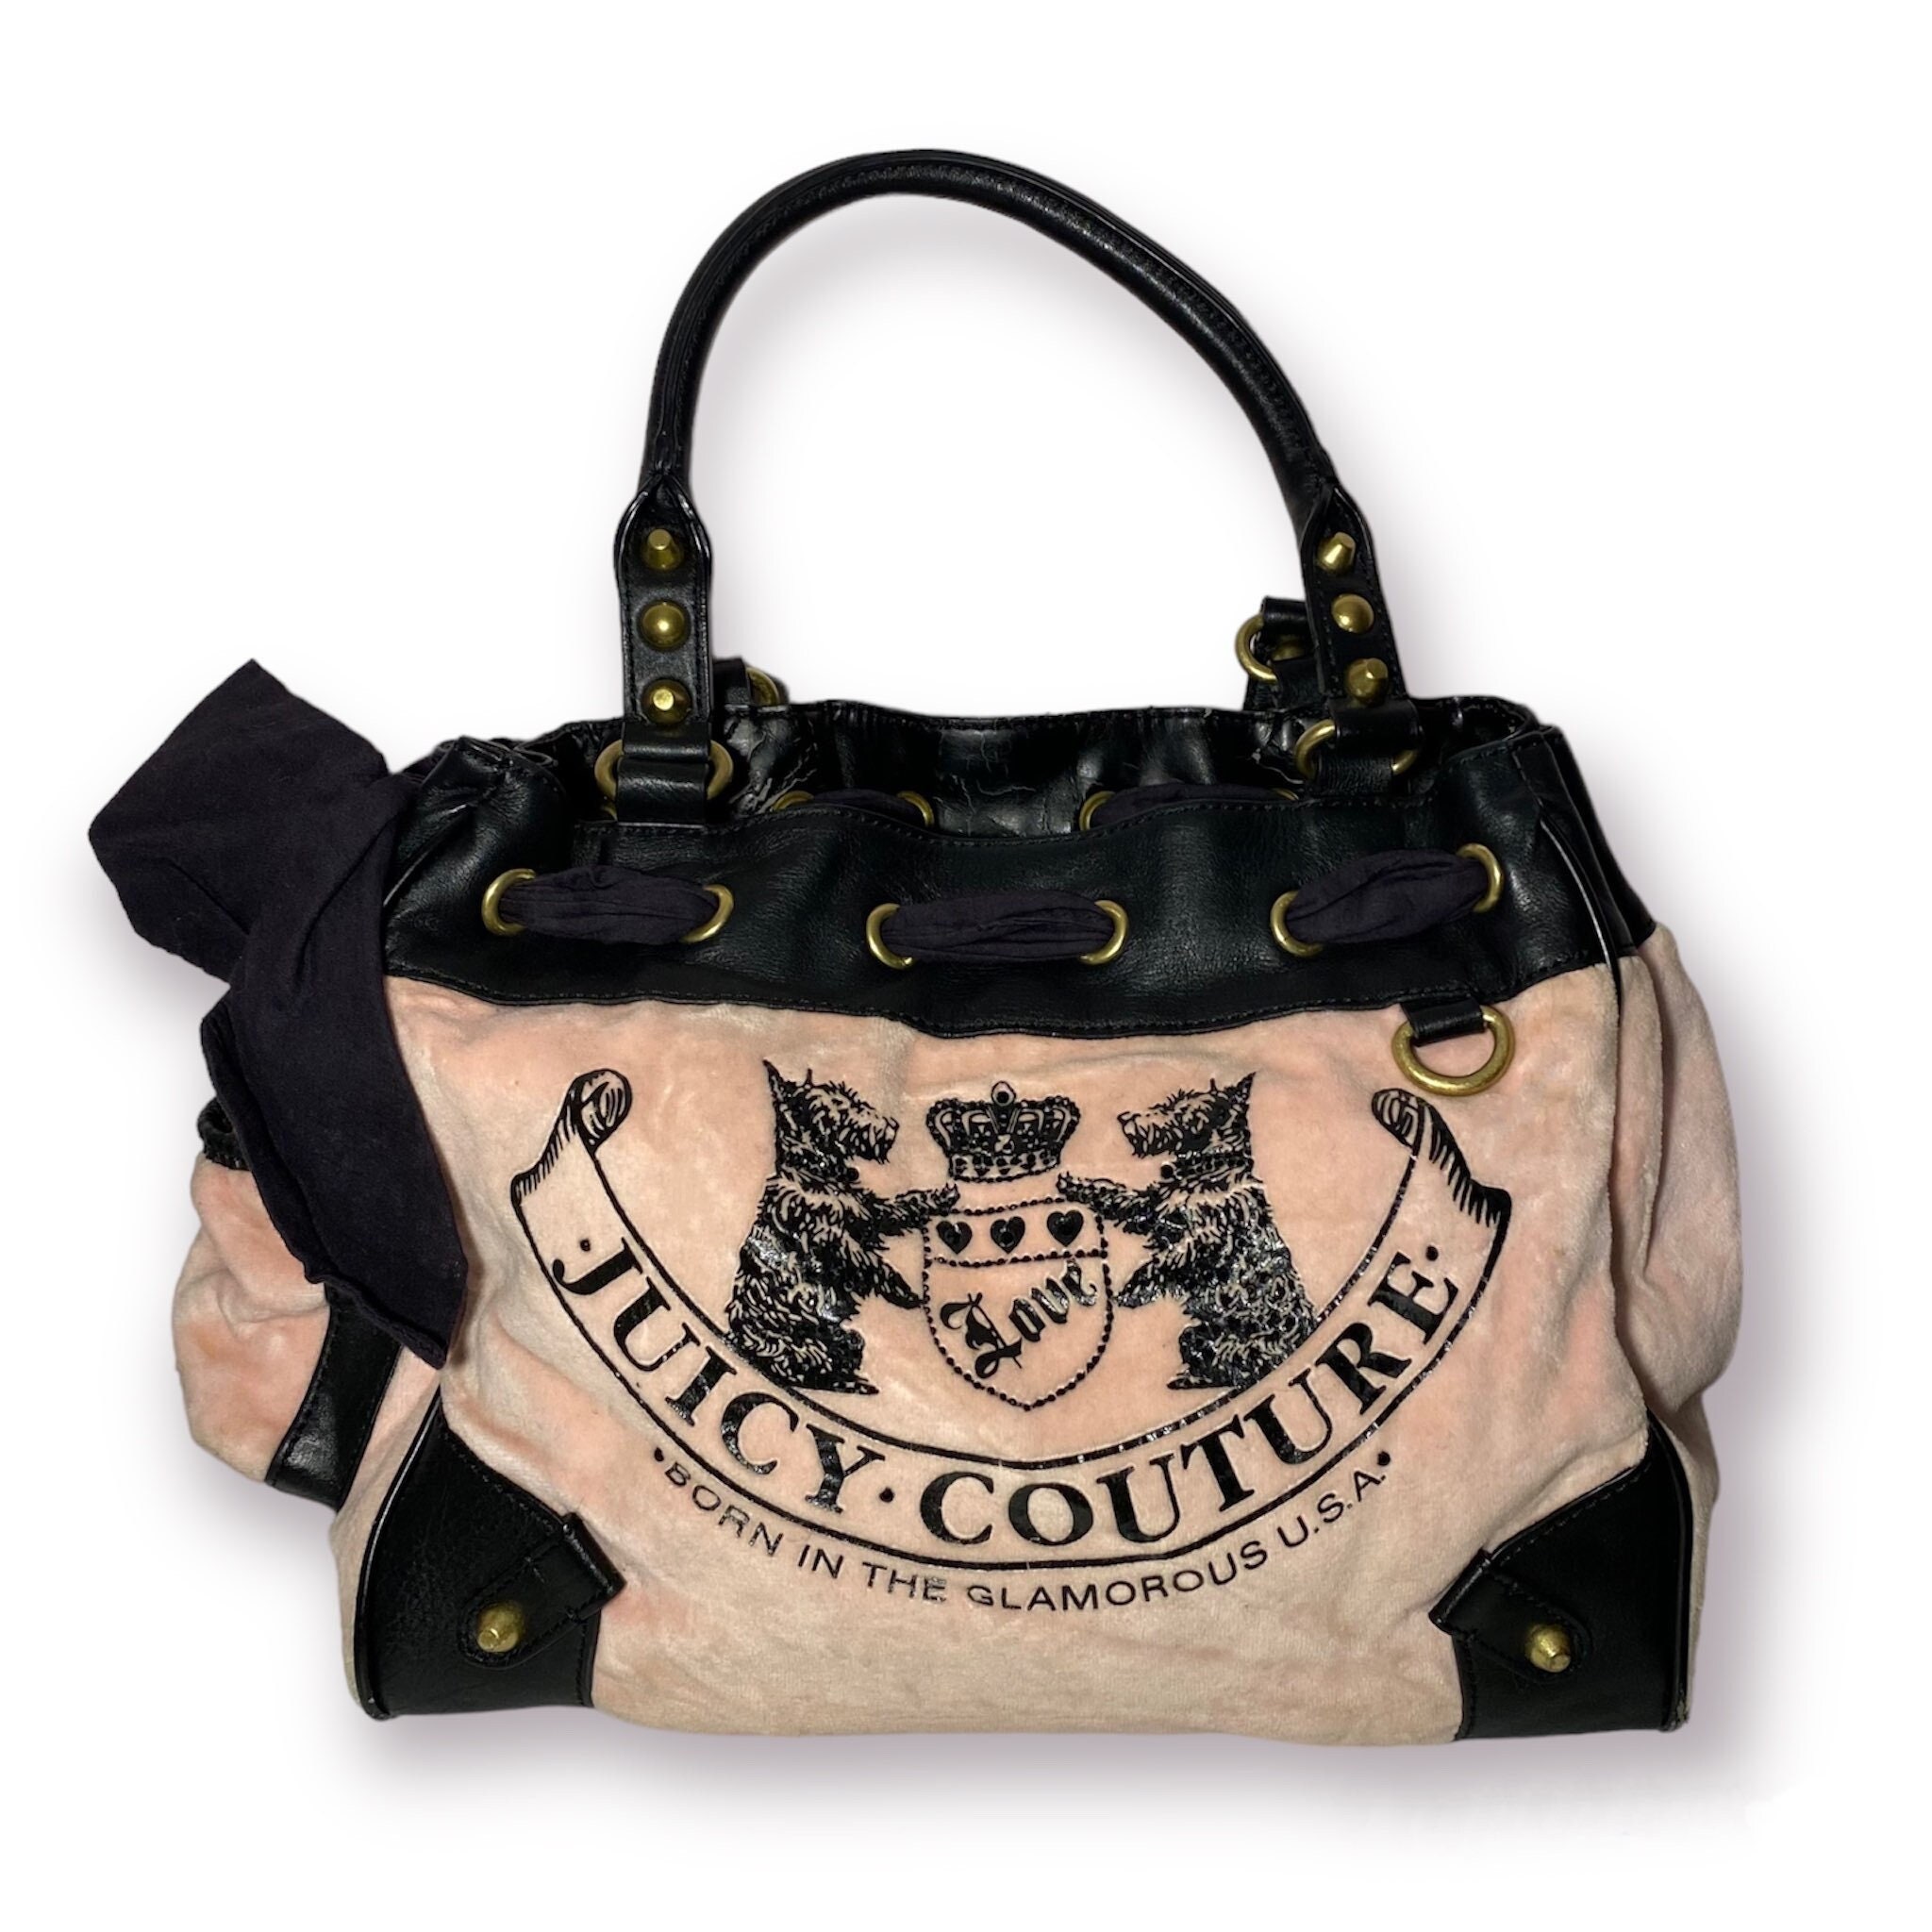 Women's Juicy Couture Handbags, Bags